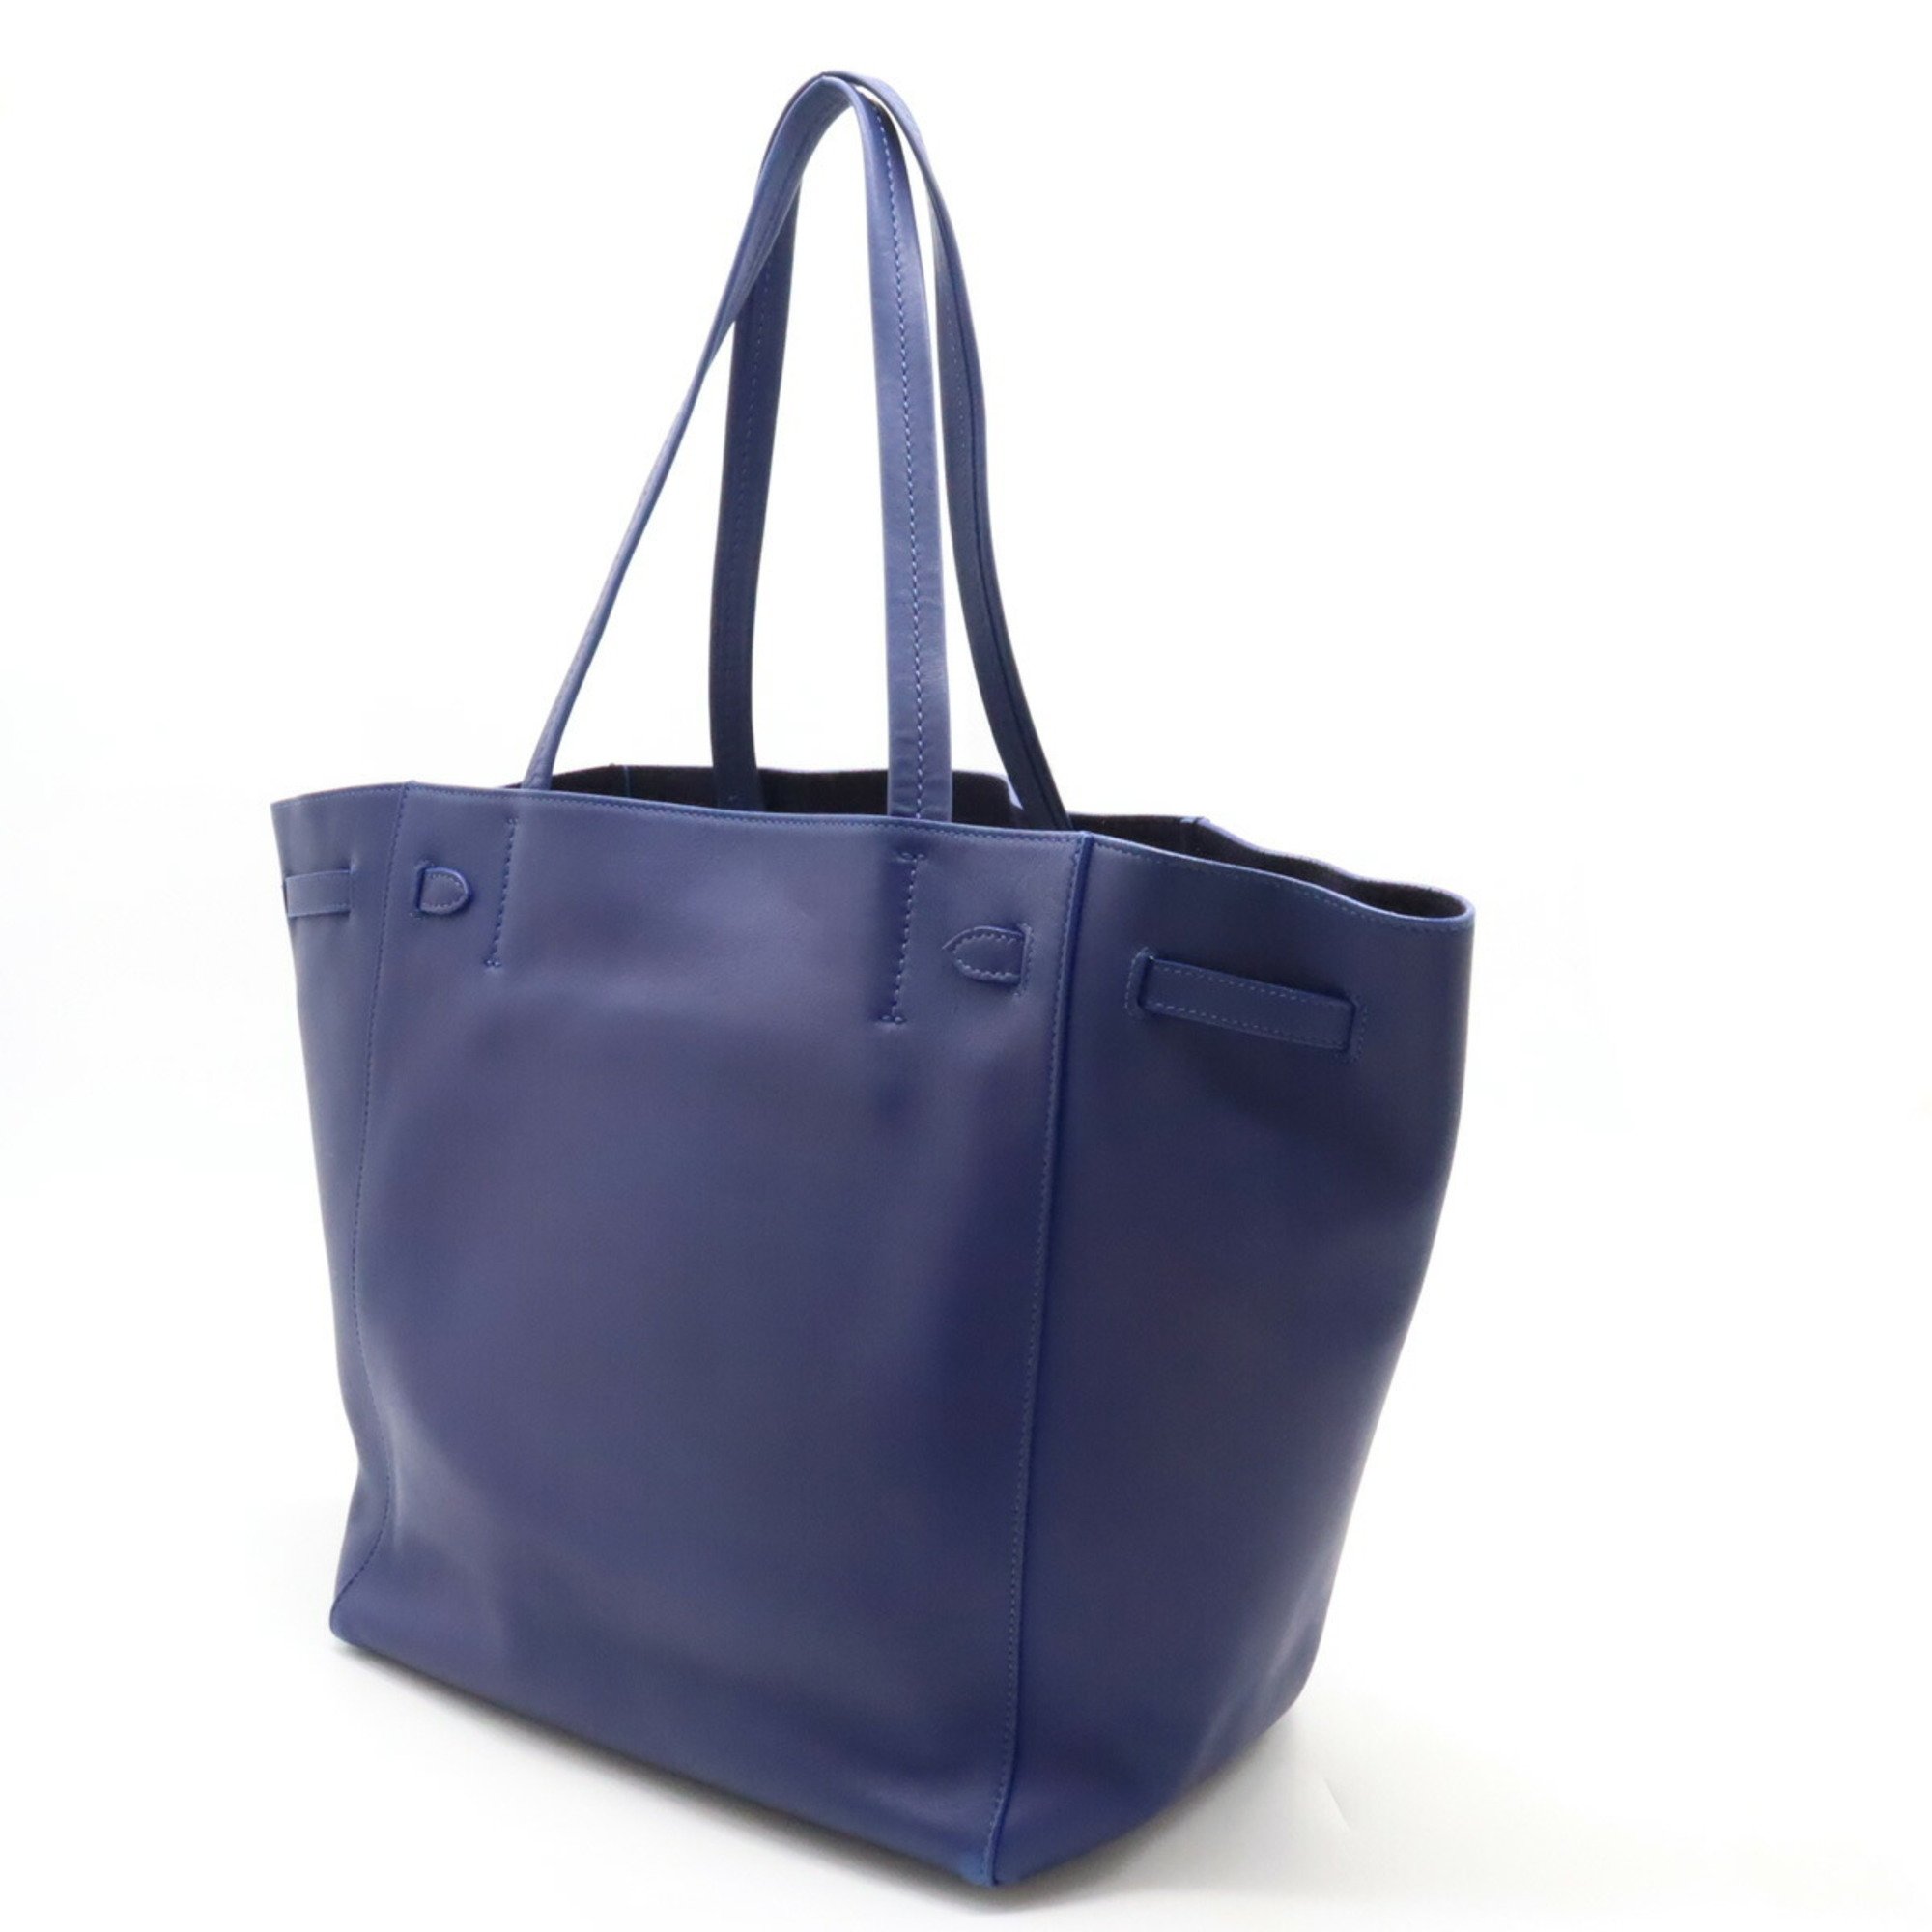 CELINE Cabas Phantom Small with Tassel Tote Bag Shoulder Leather Blue 176703